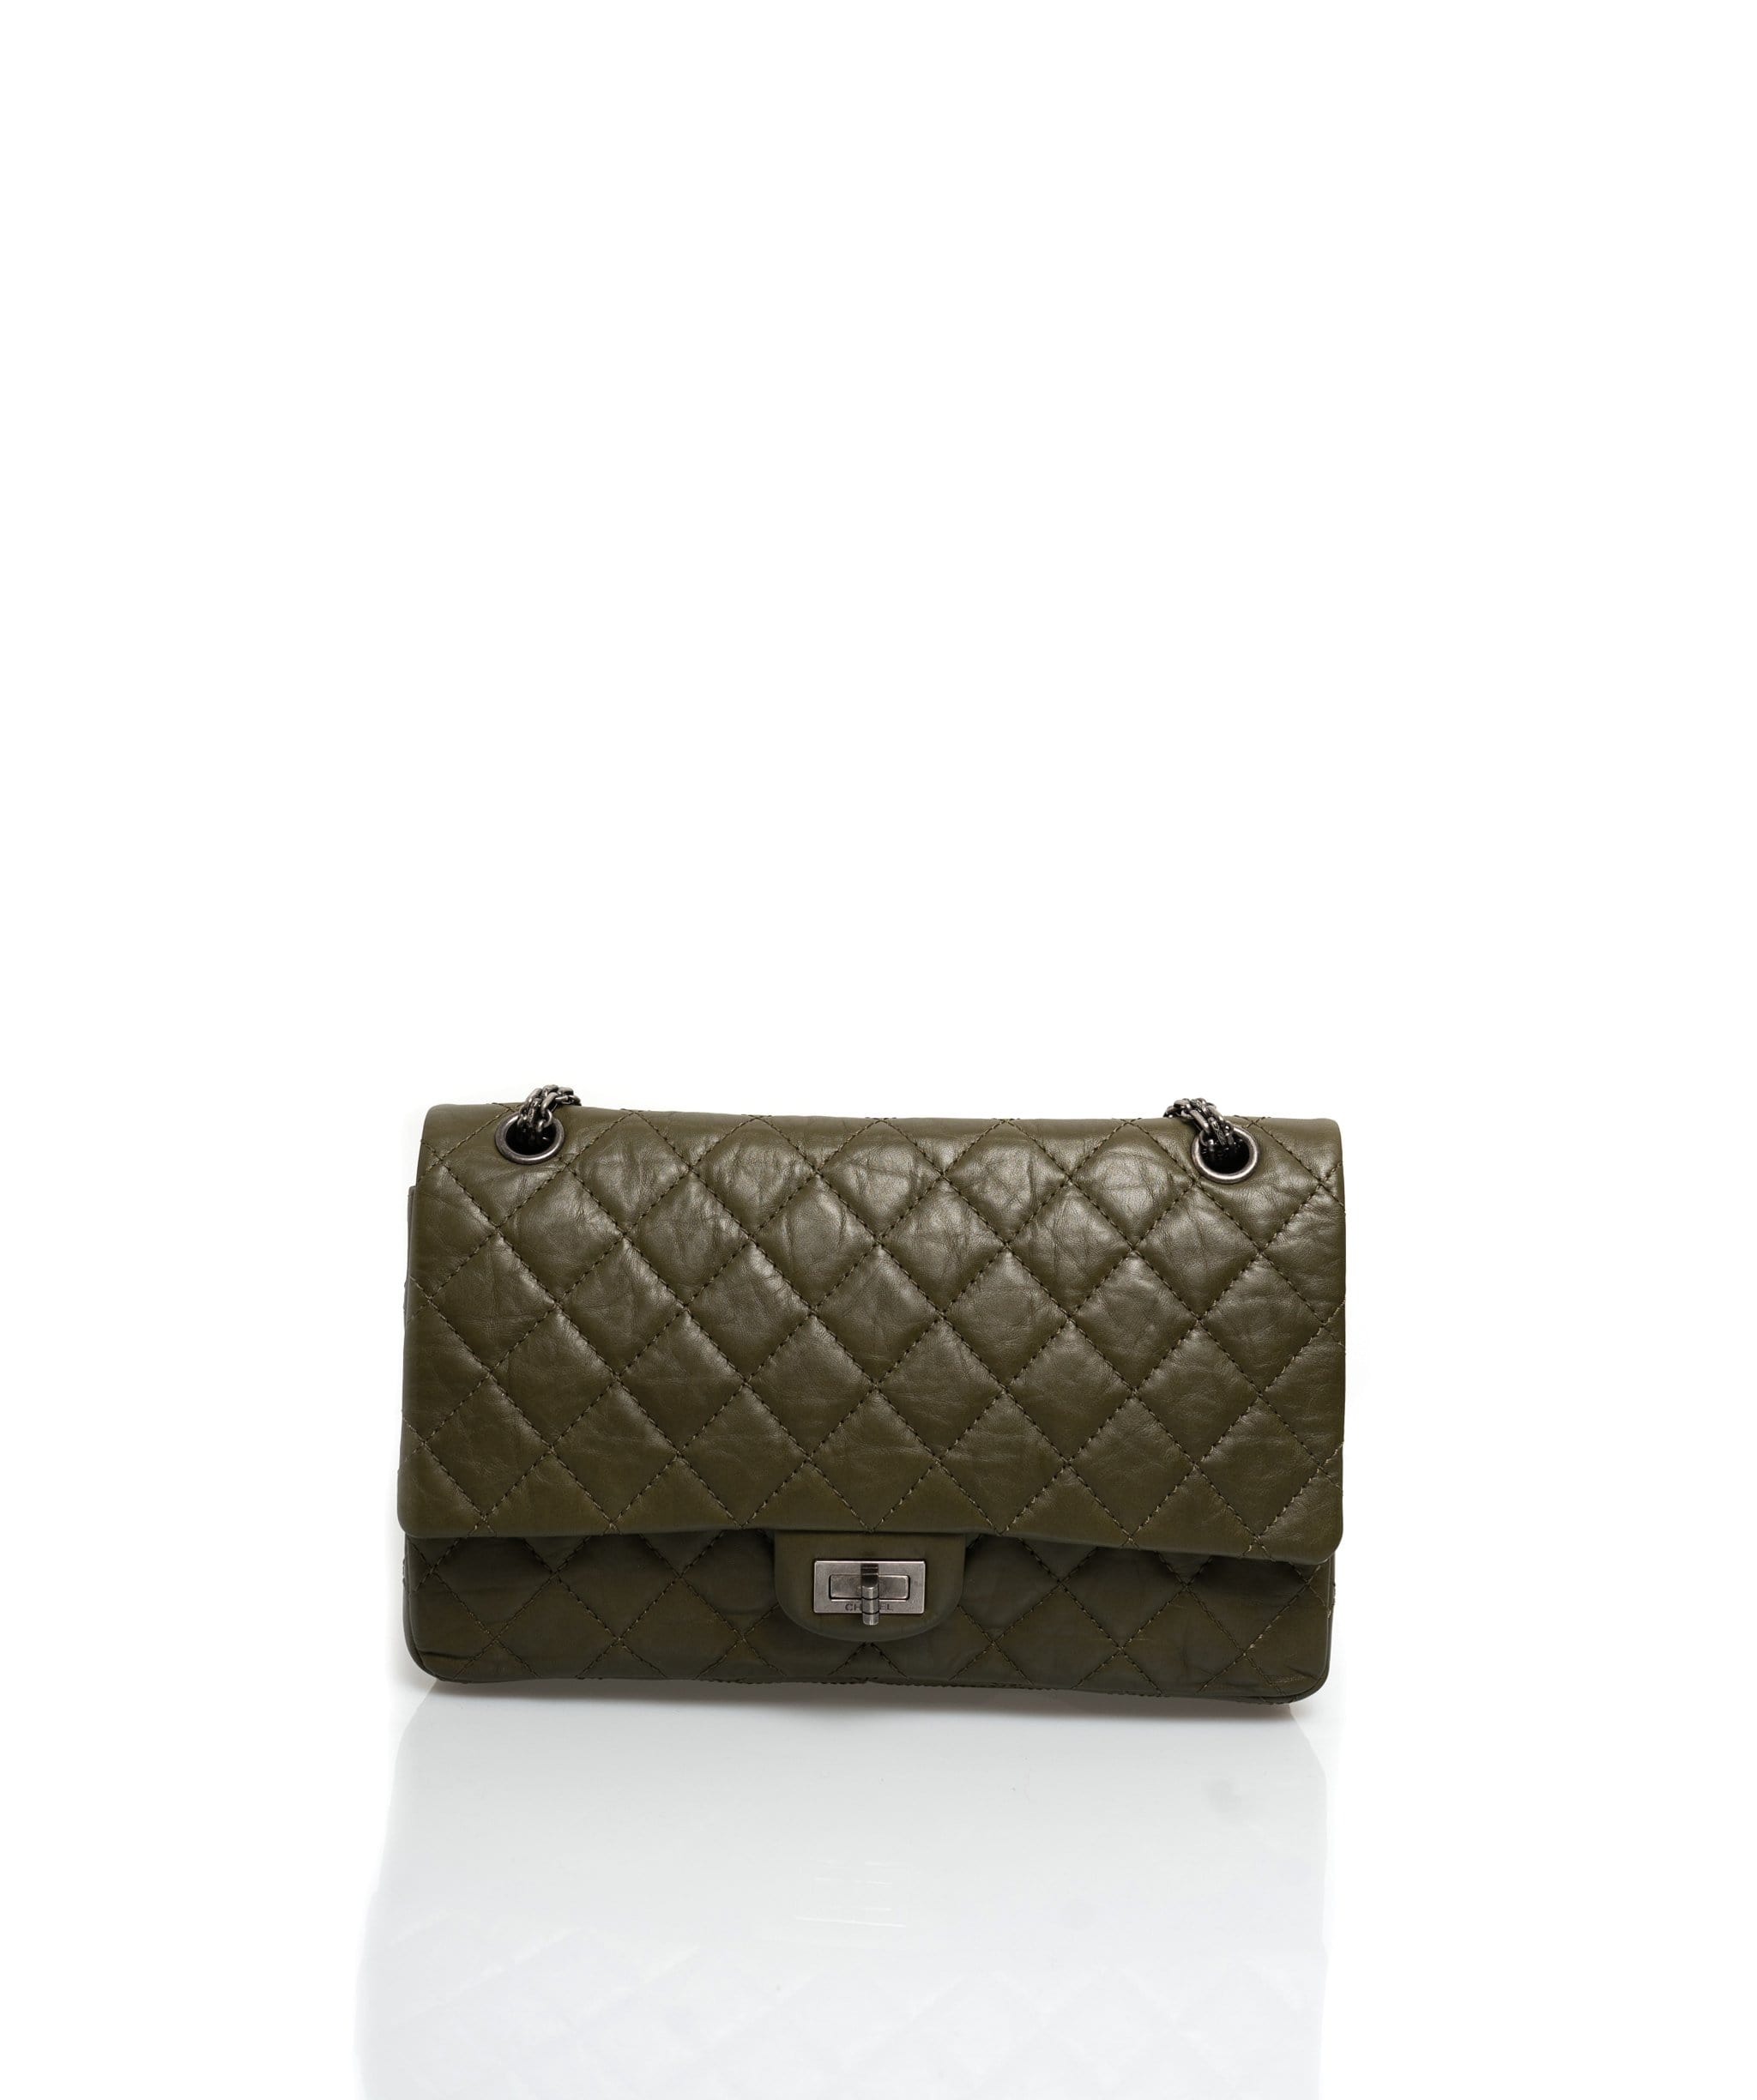 Chanel 2.55 Reissue Khaki Double Flap Bag 227- ADL1375